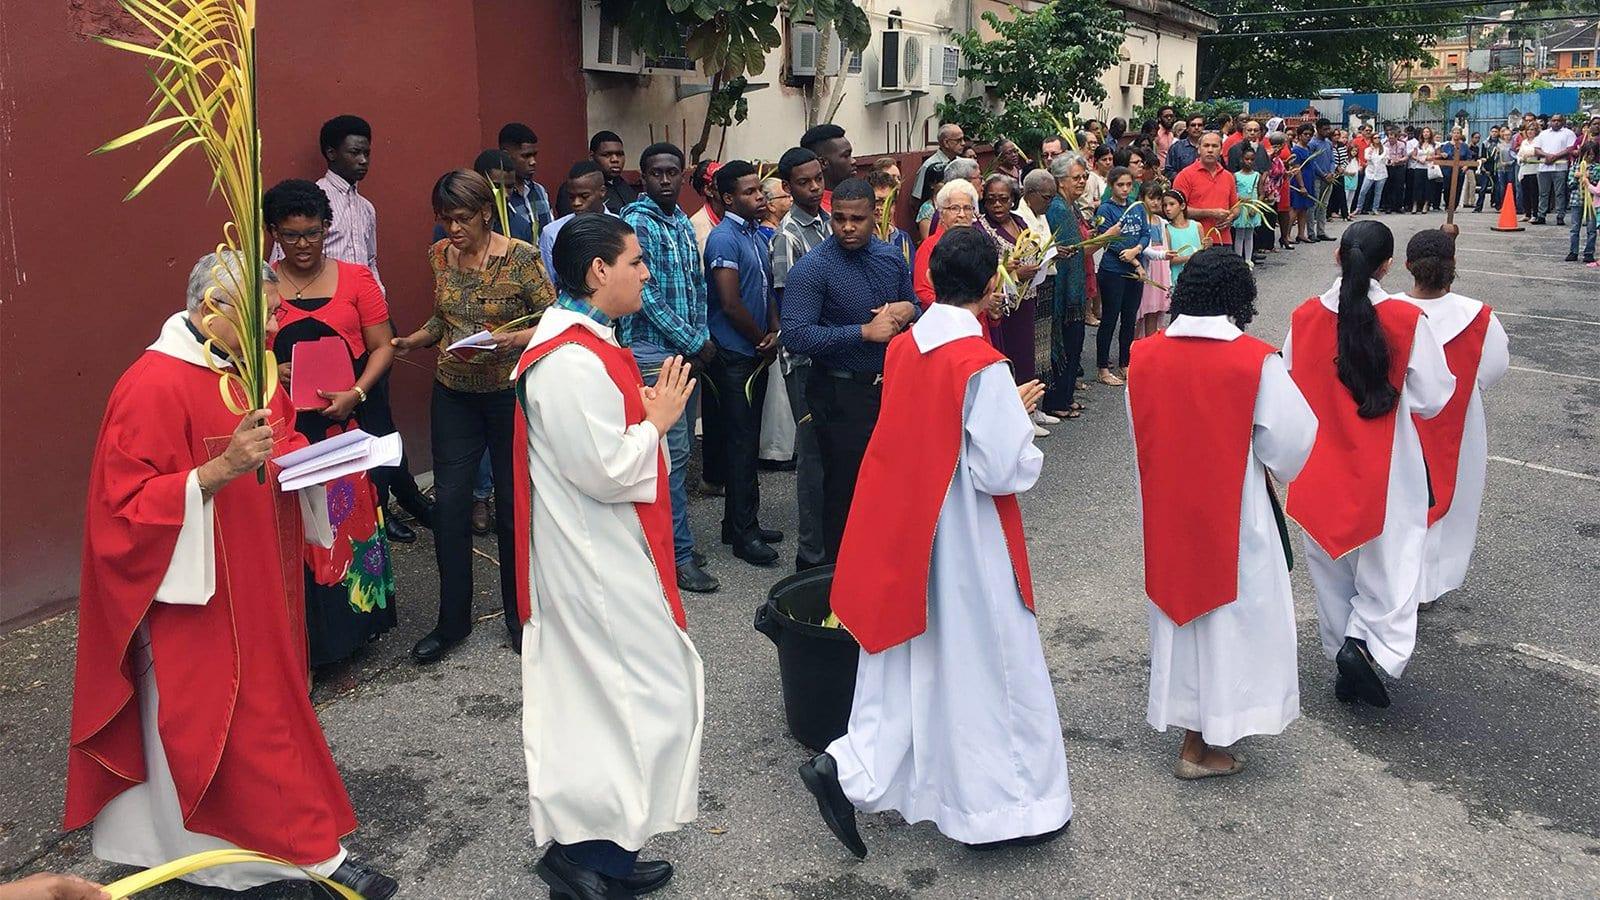 Trinidad and Tobago Catholics come to aid of Venezuelan refugees